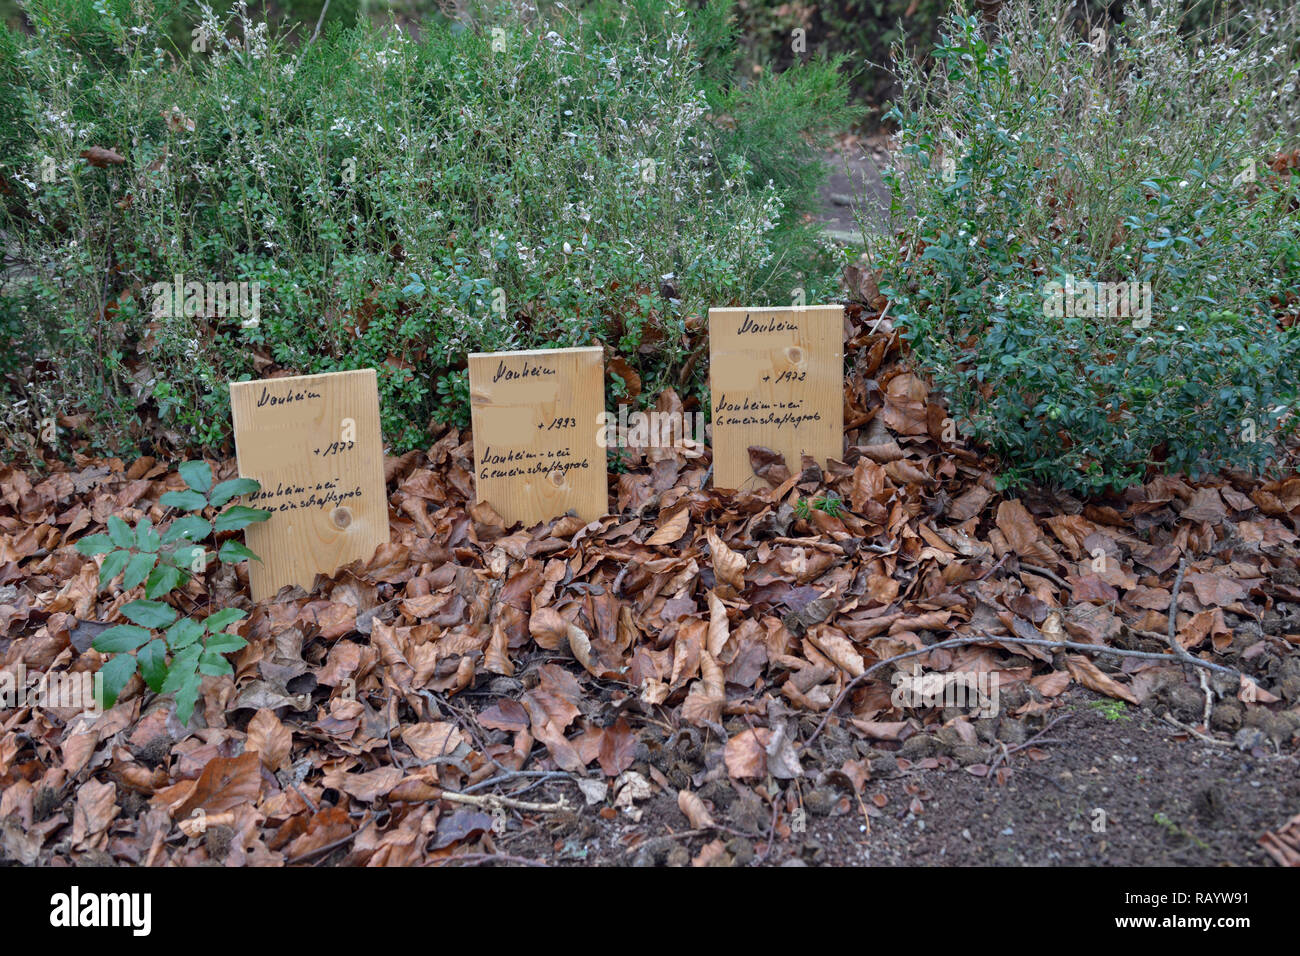 Kerpen-Manheim, Dezember 2018: In memoria alla reburied tombe del vecchio cimitero di Manheim per dare luogo per l'estensione della superficie di lignite Foto Stock